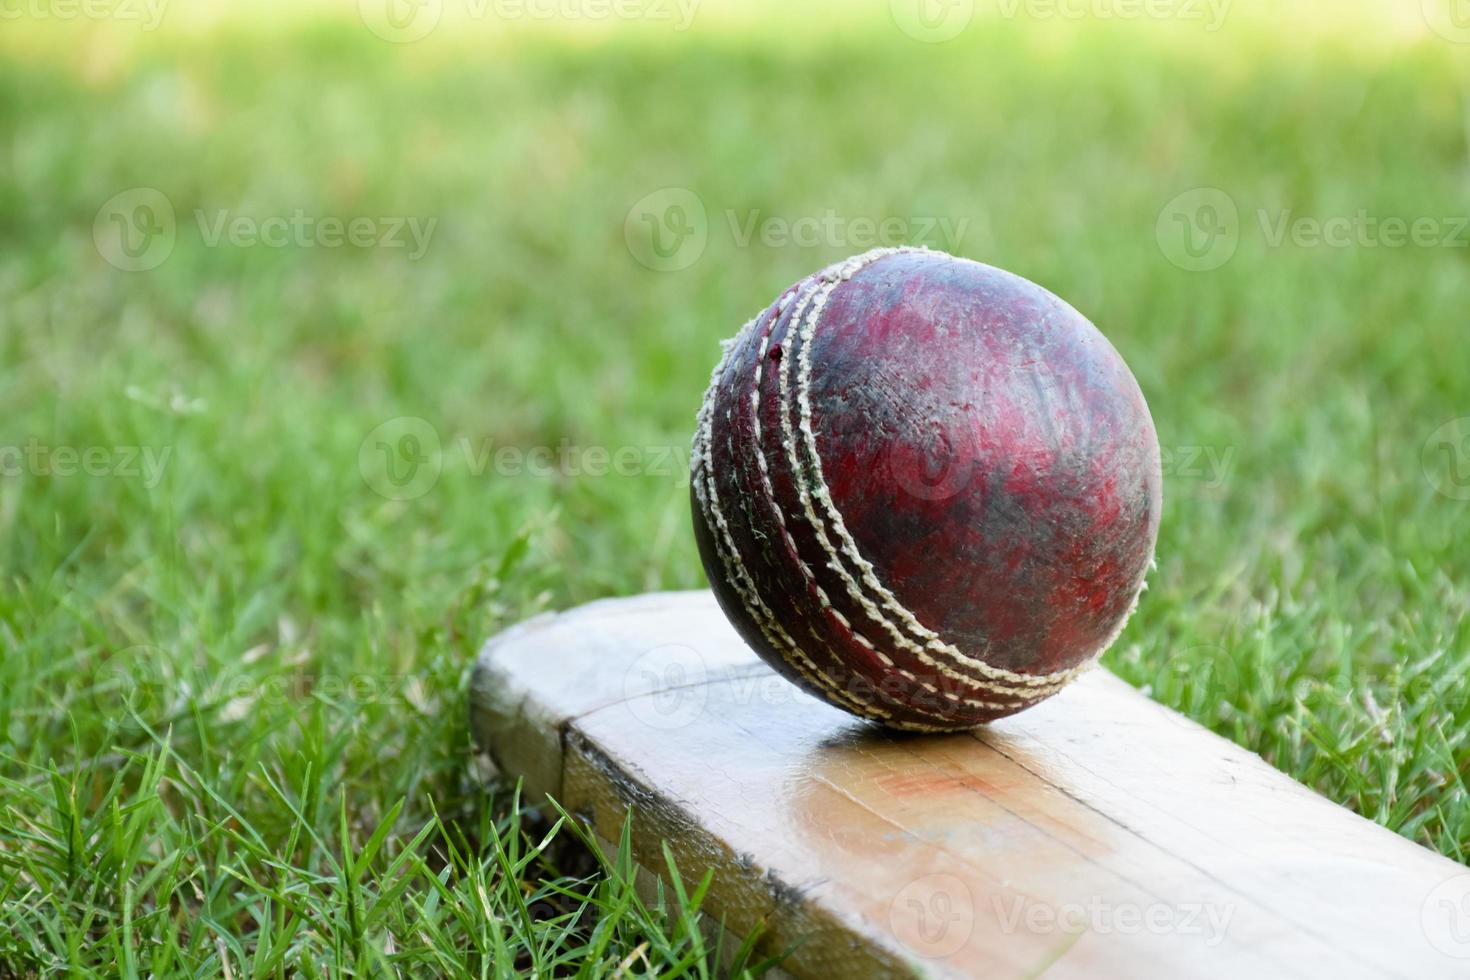 closeup antigos equipamentos de esporte de críquete no chão verde, bola de couro velha, taco de madeira, foco suave e seletivo, amantes do esporte de críquete tradicional em todo o conceito do mundo. foto